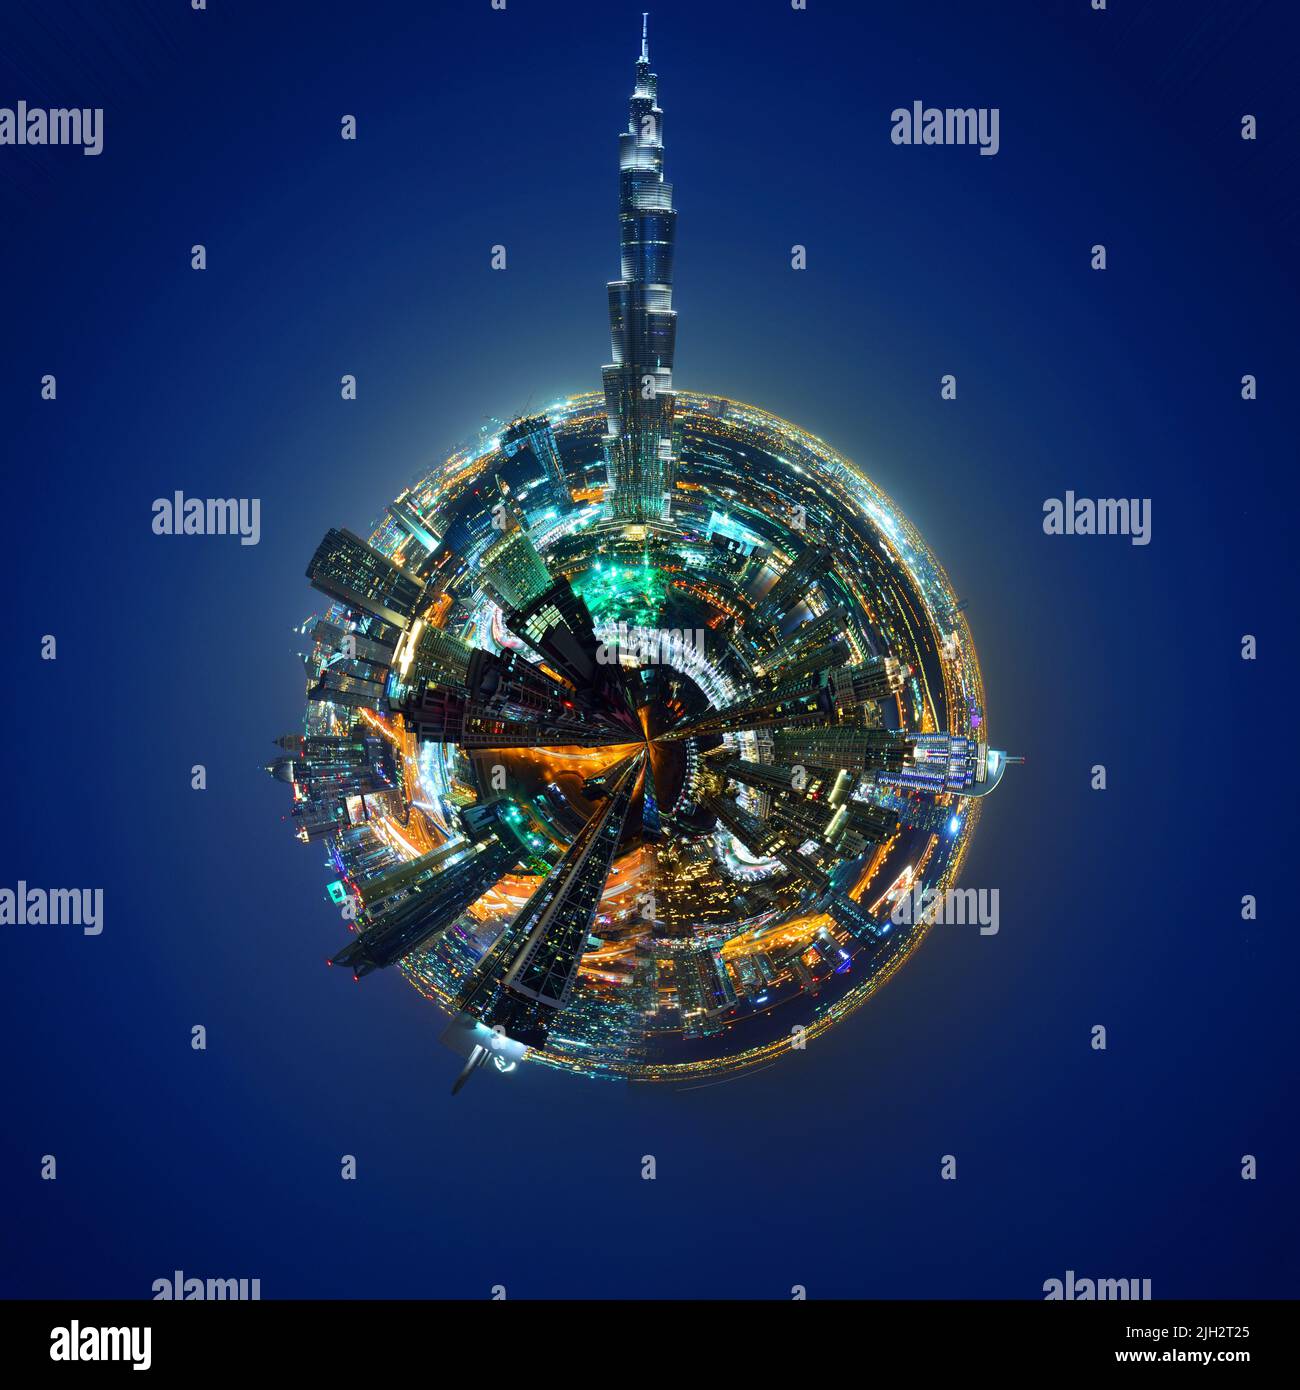 Foto a 360 gradi a forma di globo della sklyine di Dubai, Emirati Arabi Uniti Foto Stock